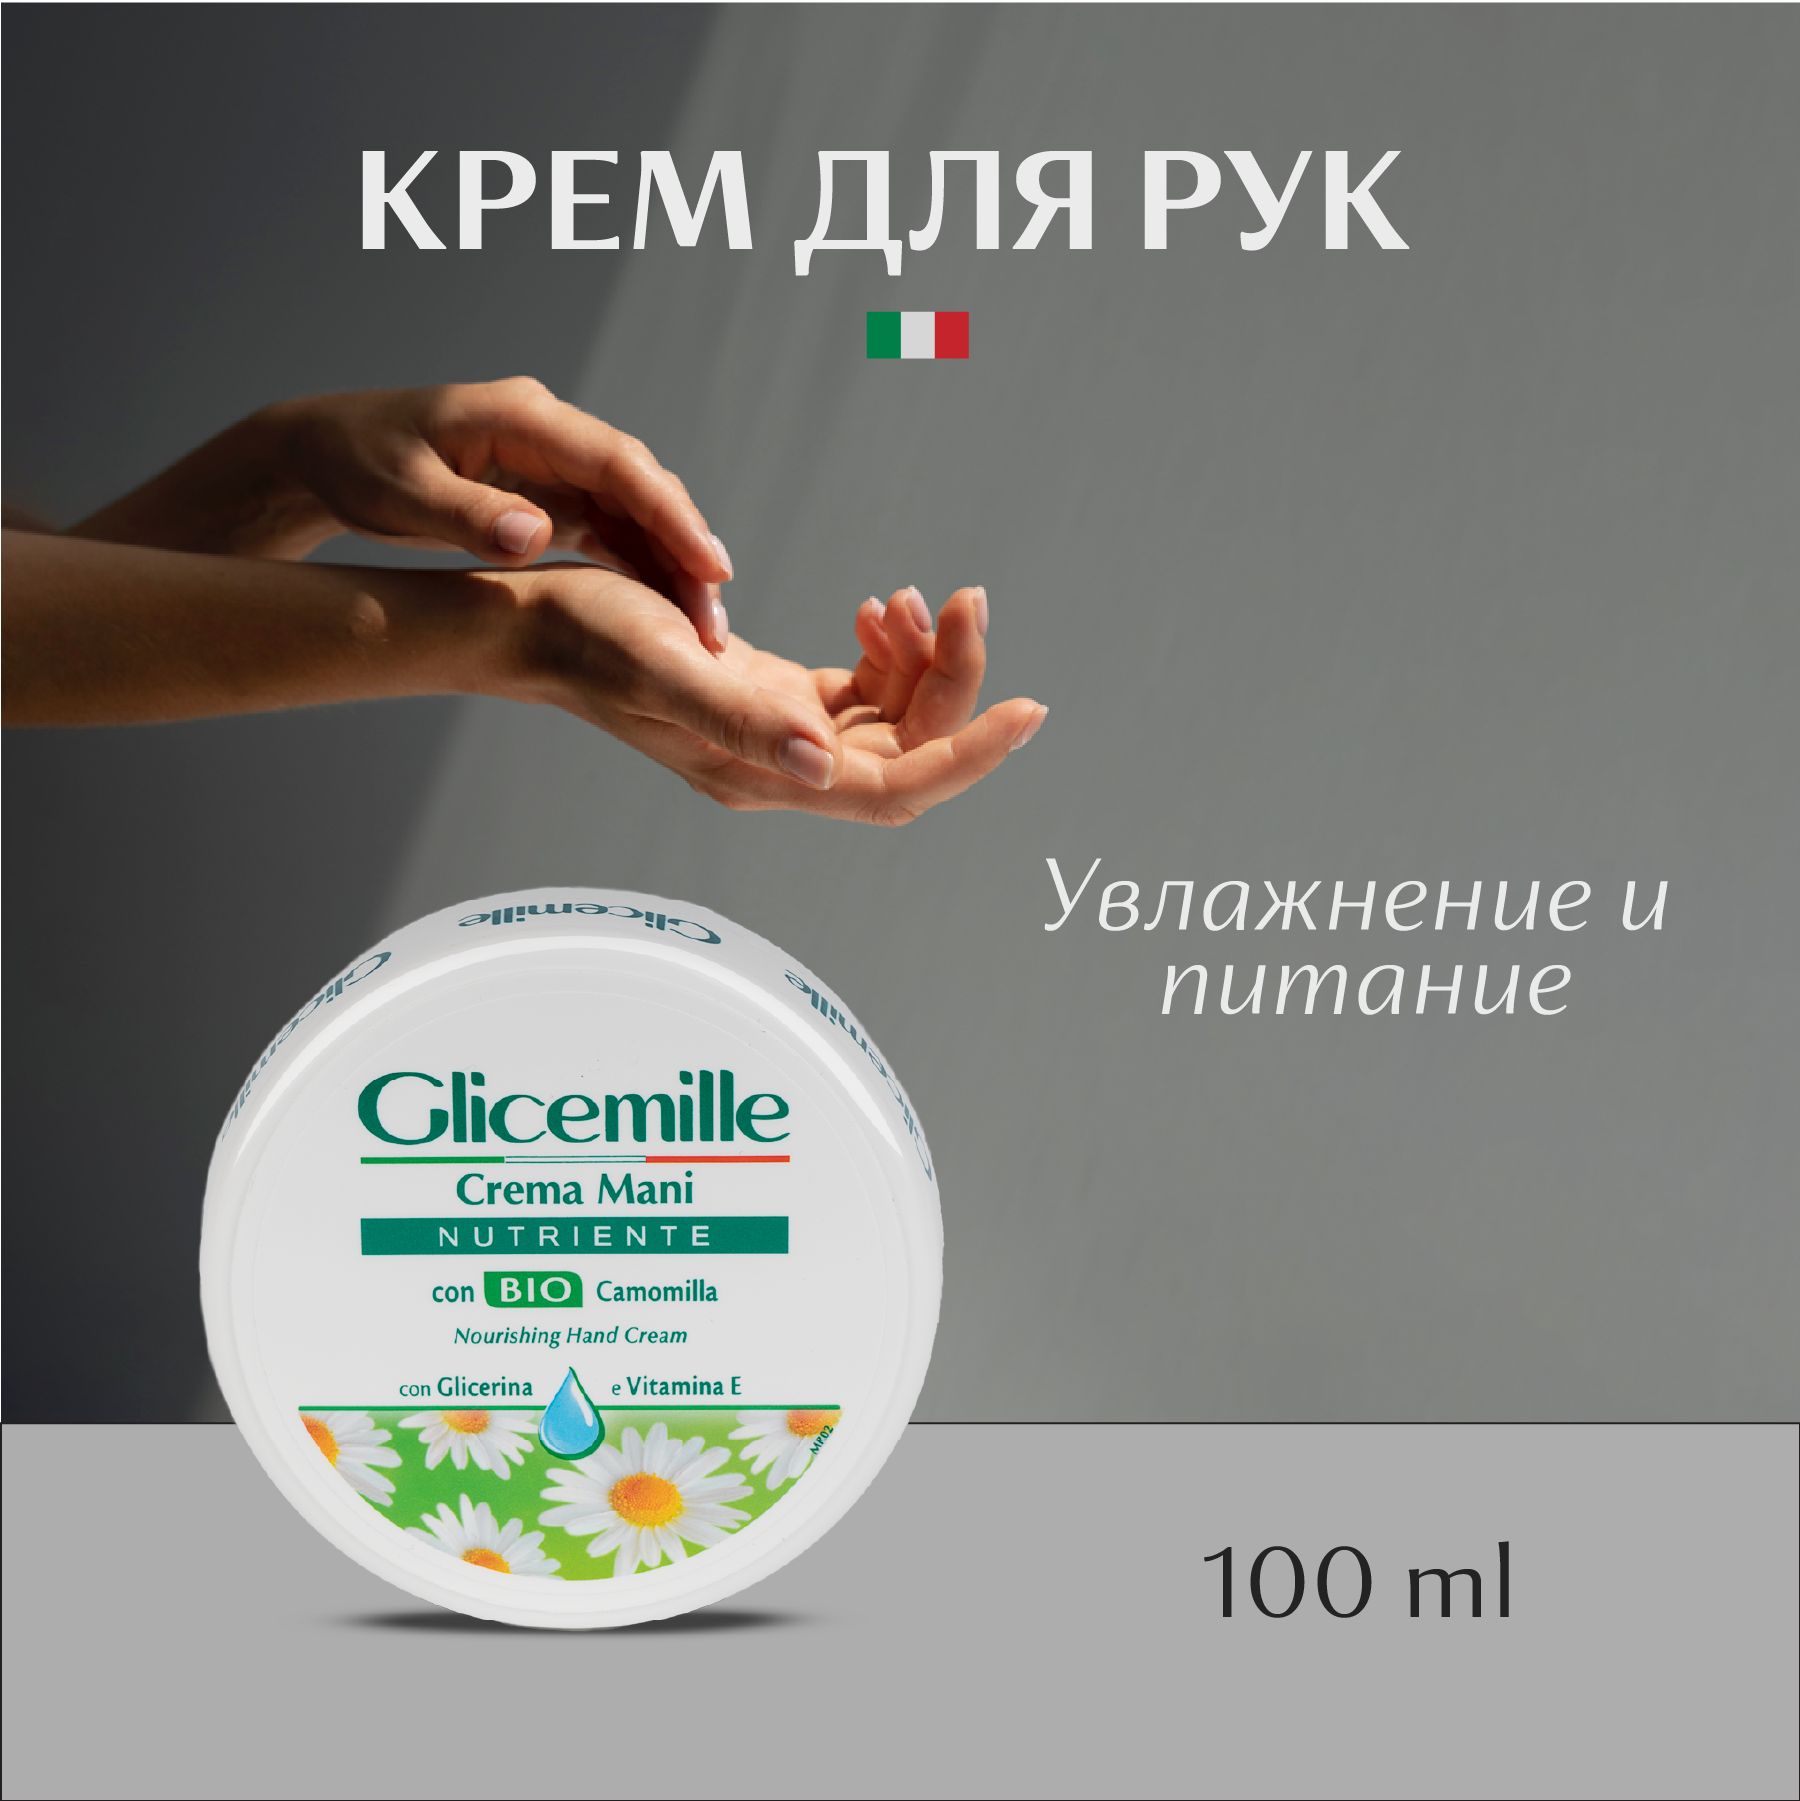 Крем для рук Glicemille питательный 100 мл - фото 2